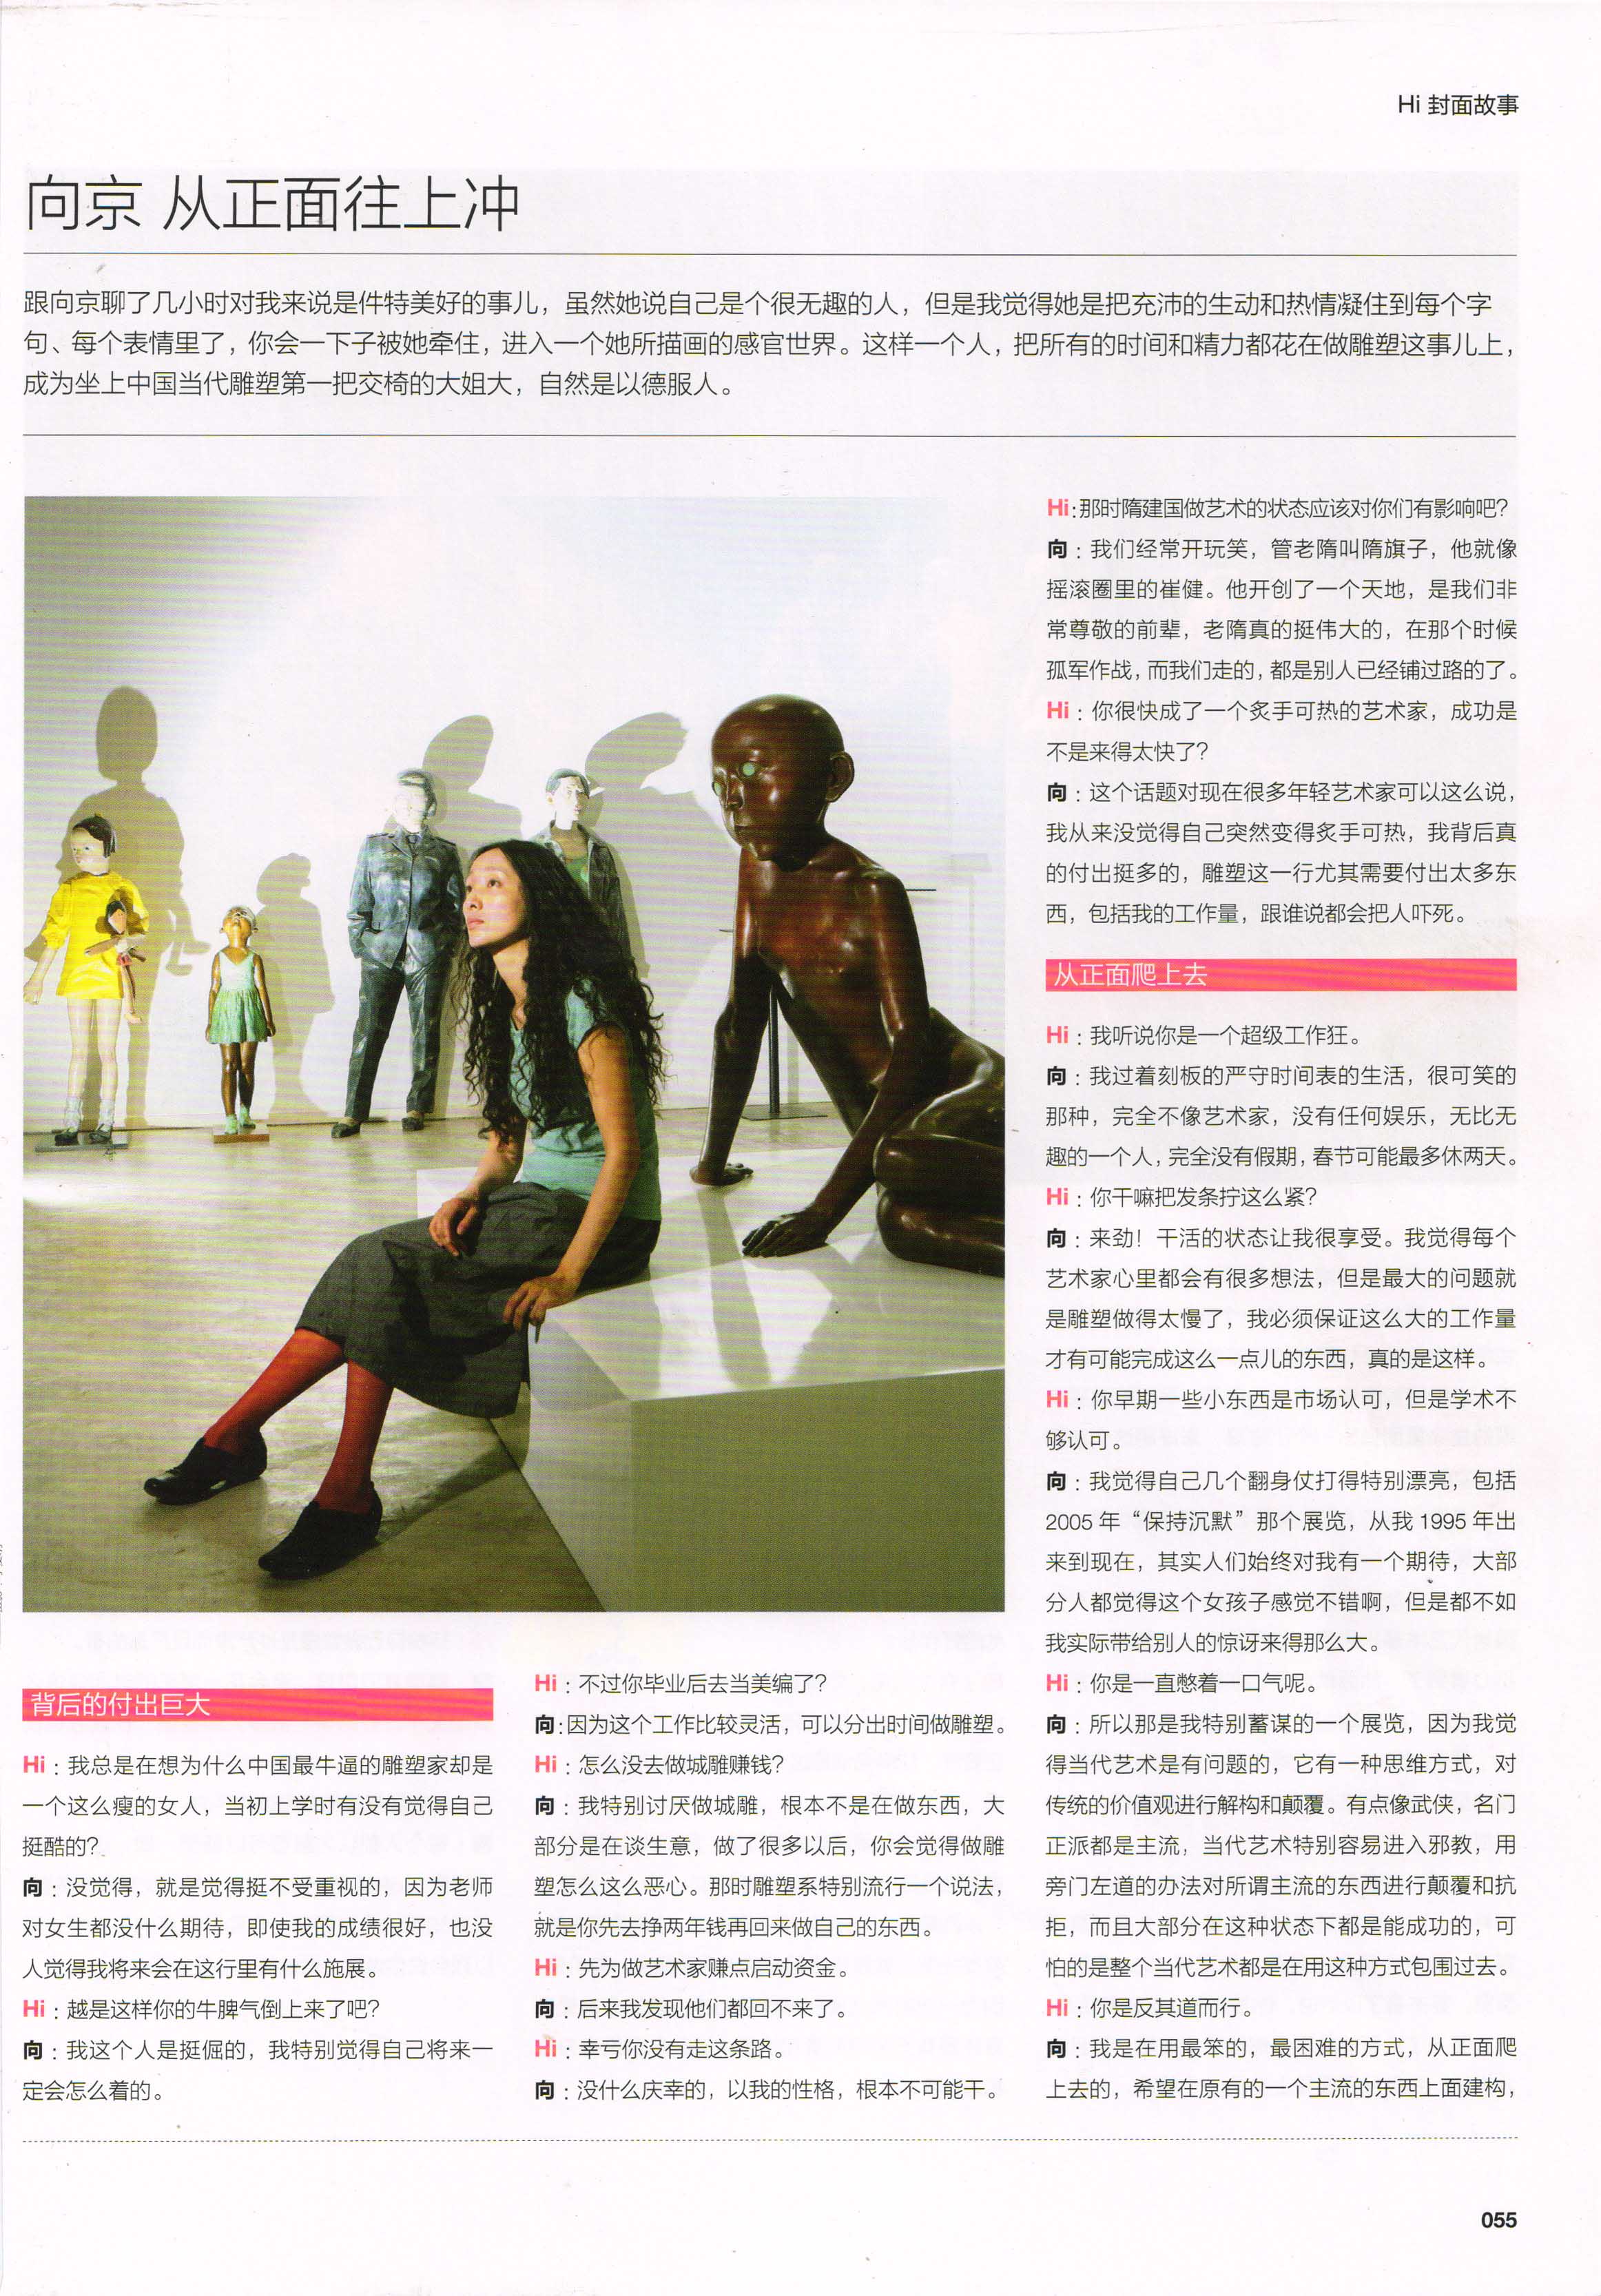 2009年第6期 Hi 艺术 雕塑封面专题《向京：从正面往上冲》p59-60 (1).jpg